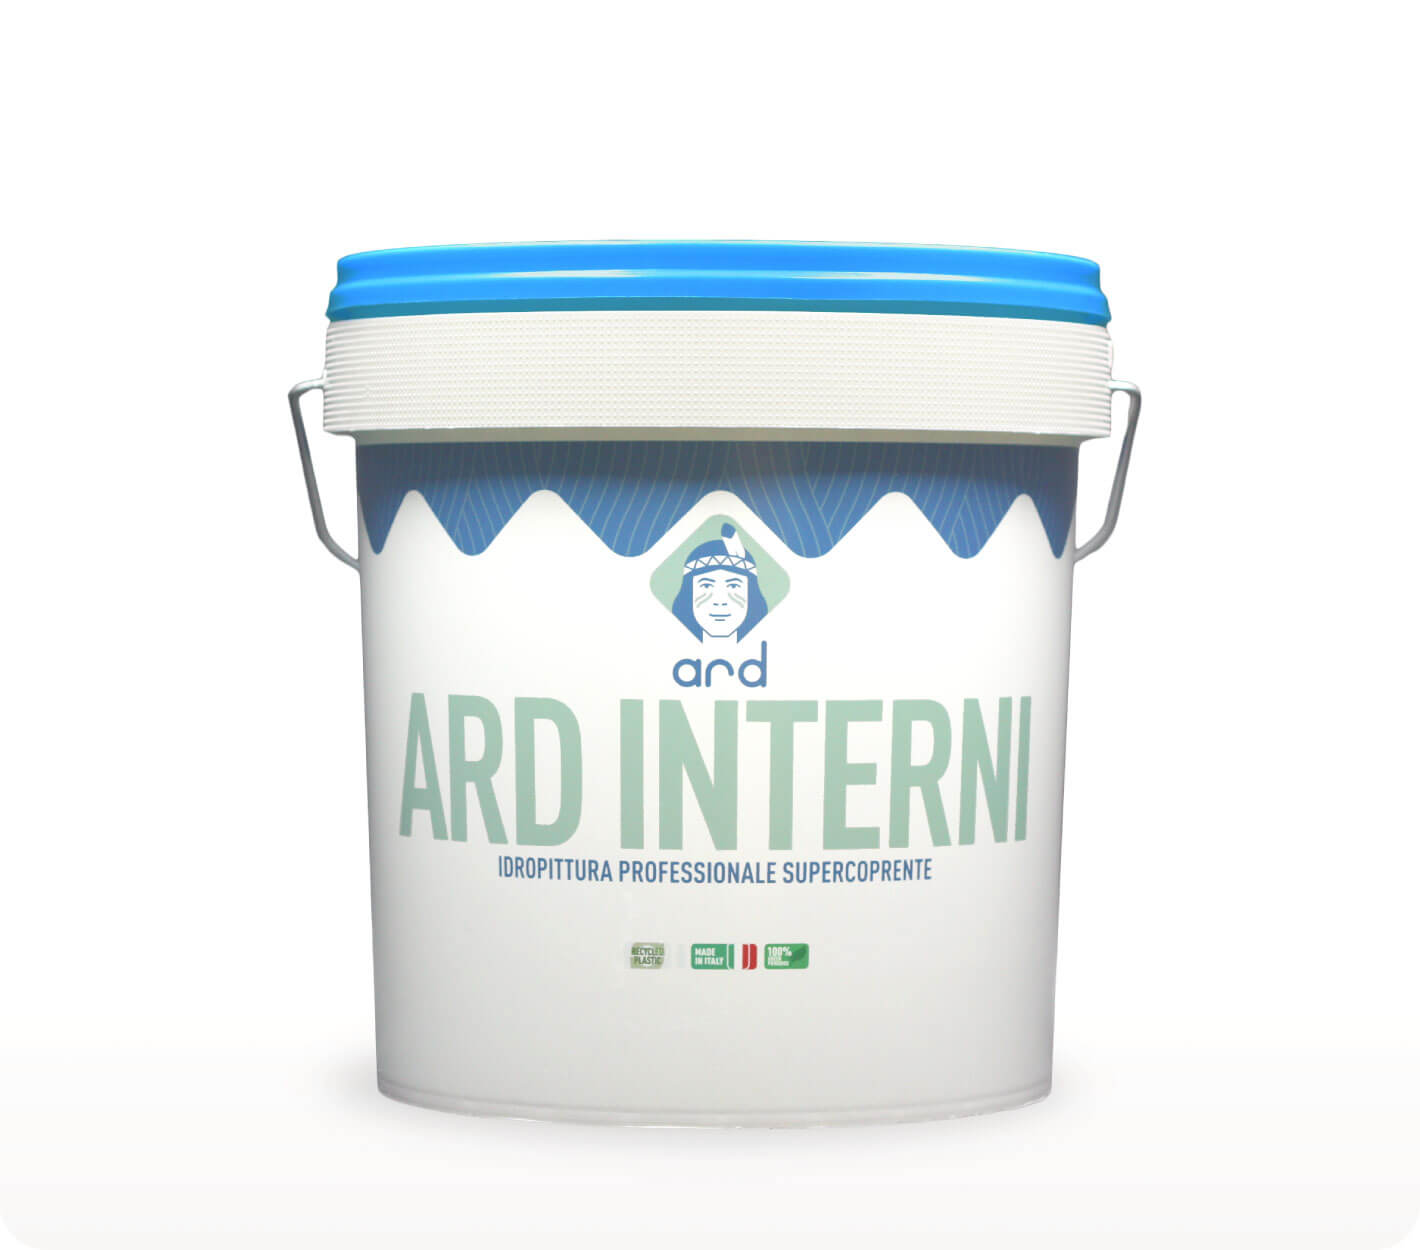 ARD Interni - pittura supercoprente per interni - Ard Raccanello